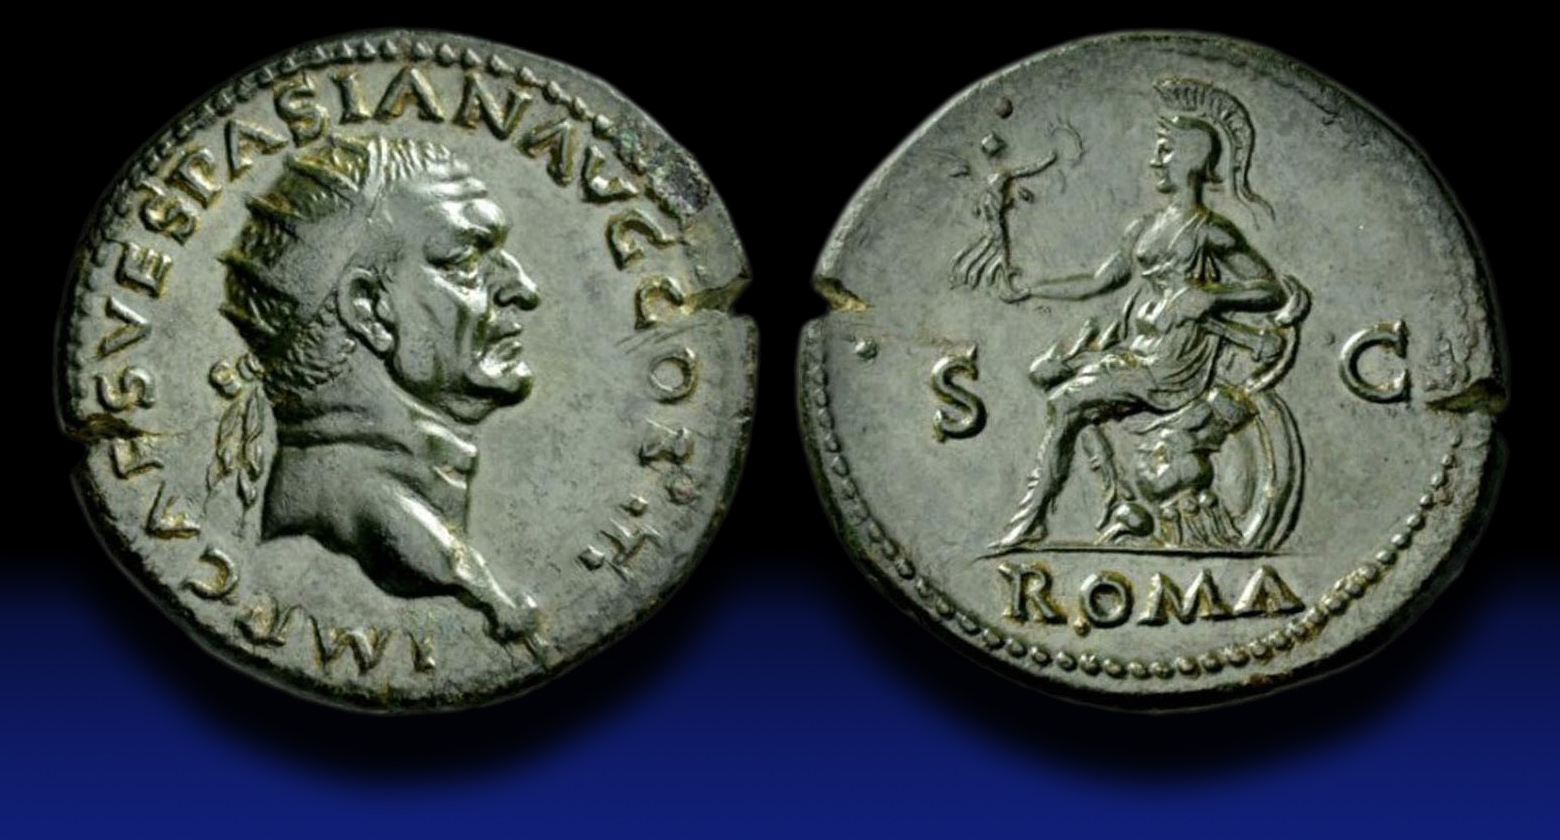 Aa - Vespasian AE dupondius.jpg